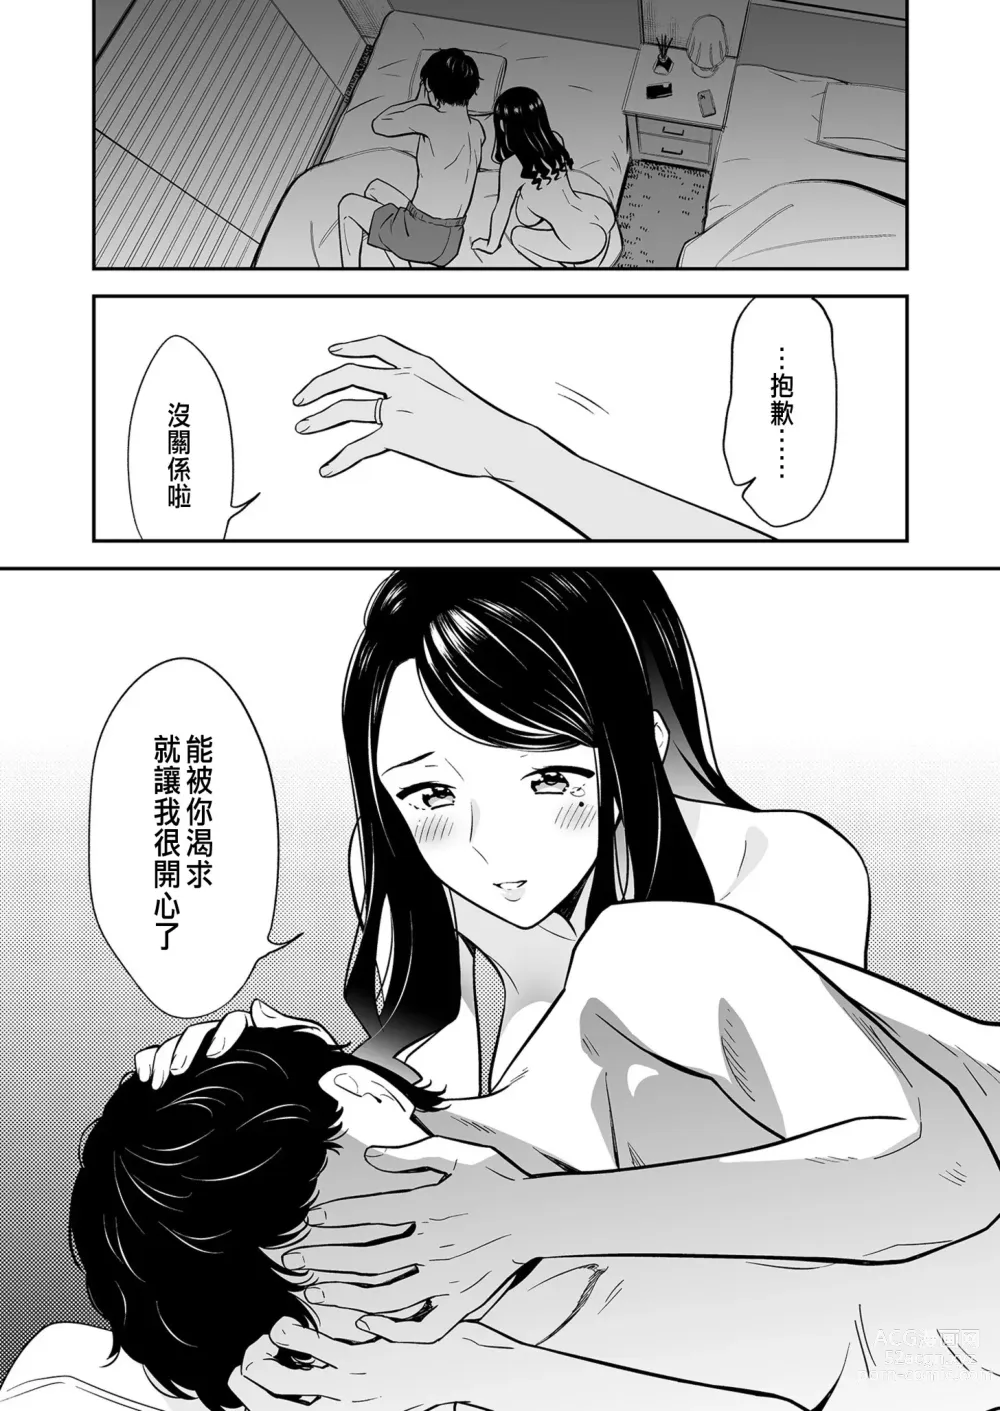 Page 6 of manga Suki nano wa Anata dake... 2